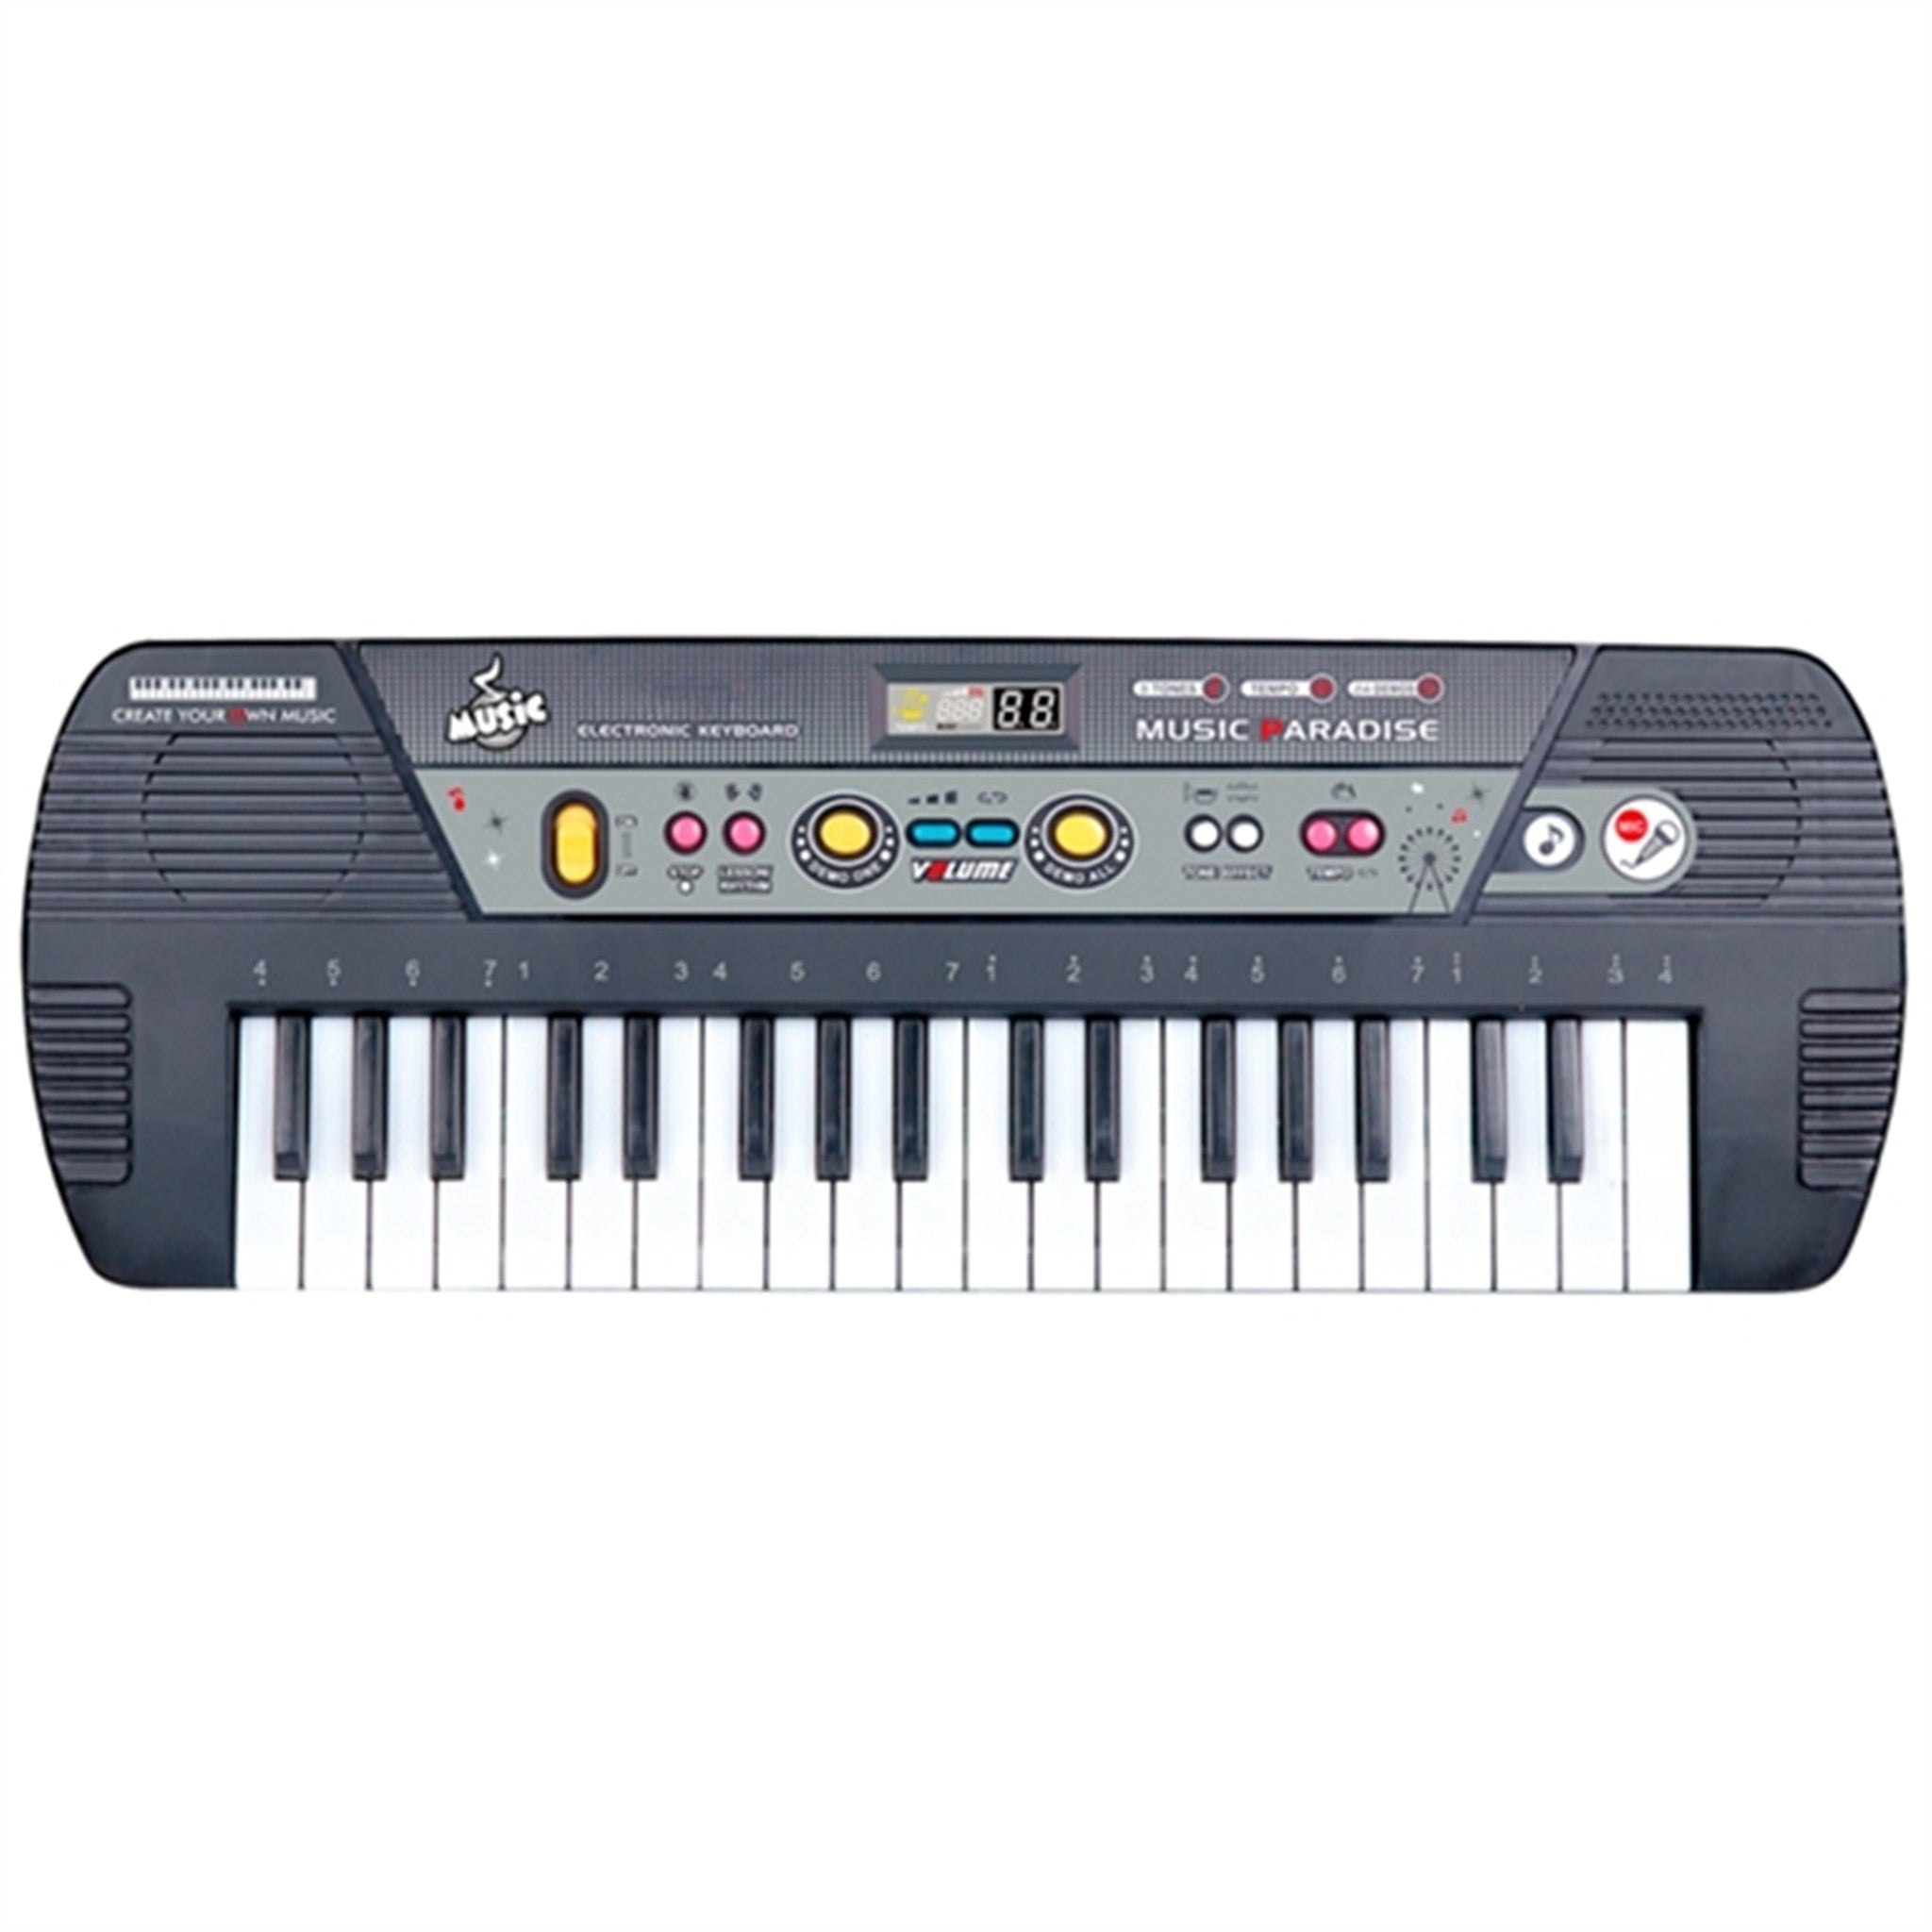 Music Keyboard 37 keys